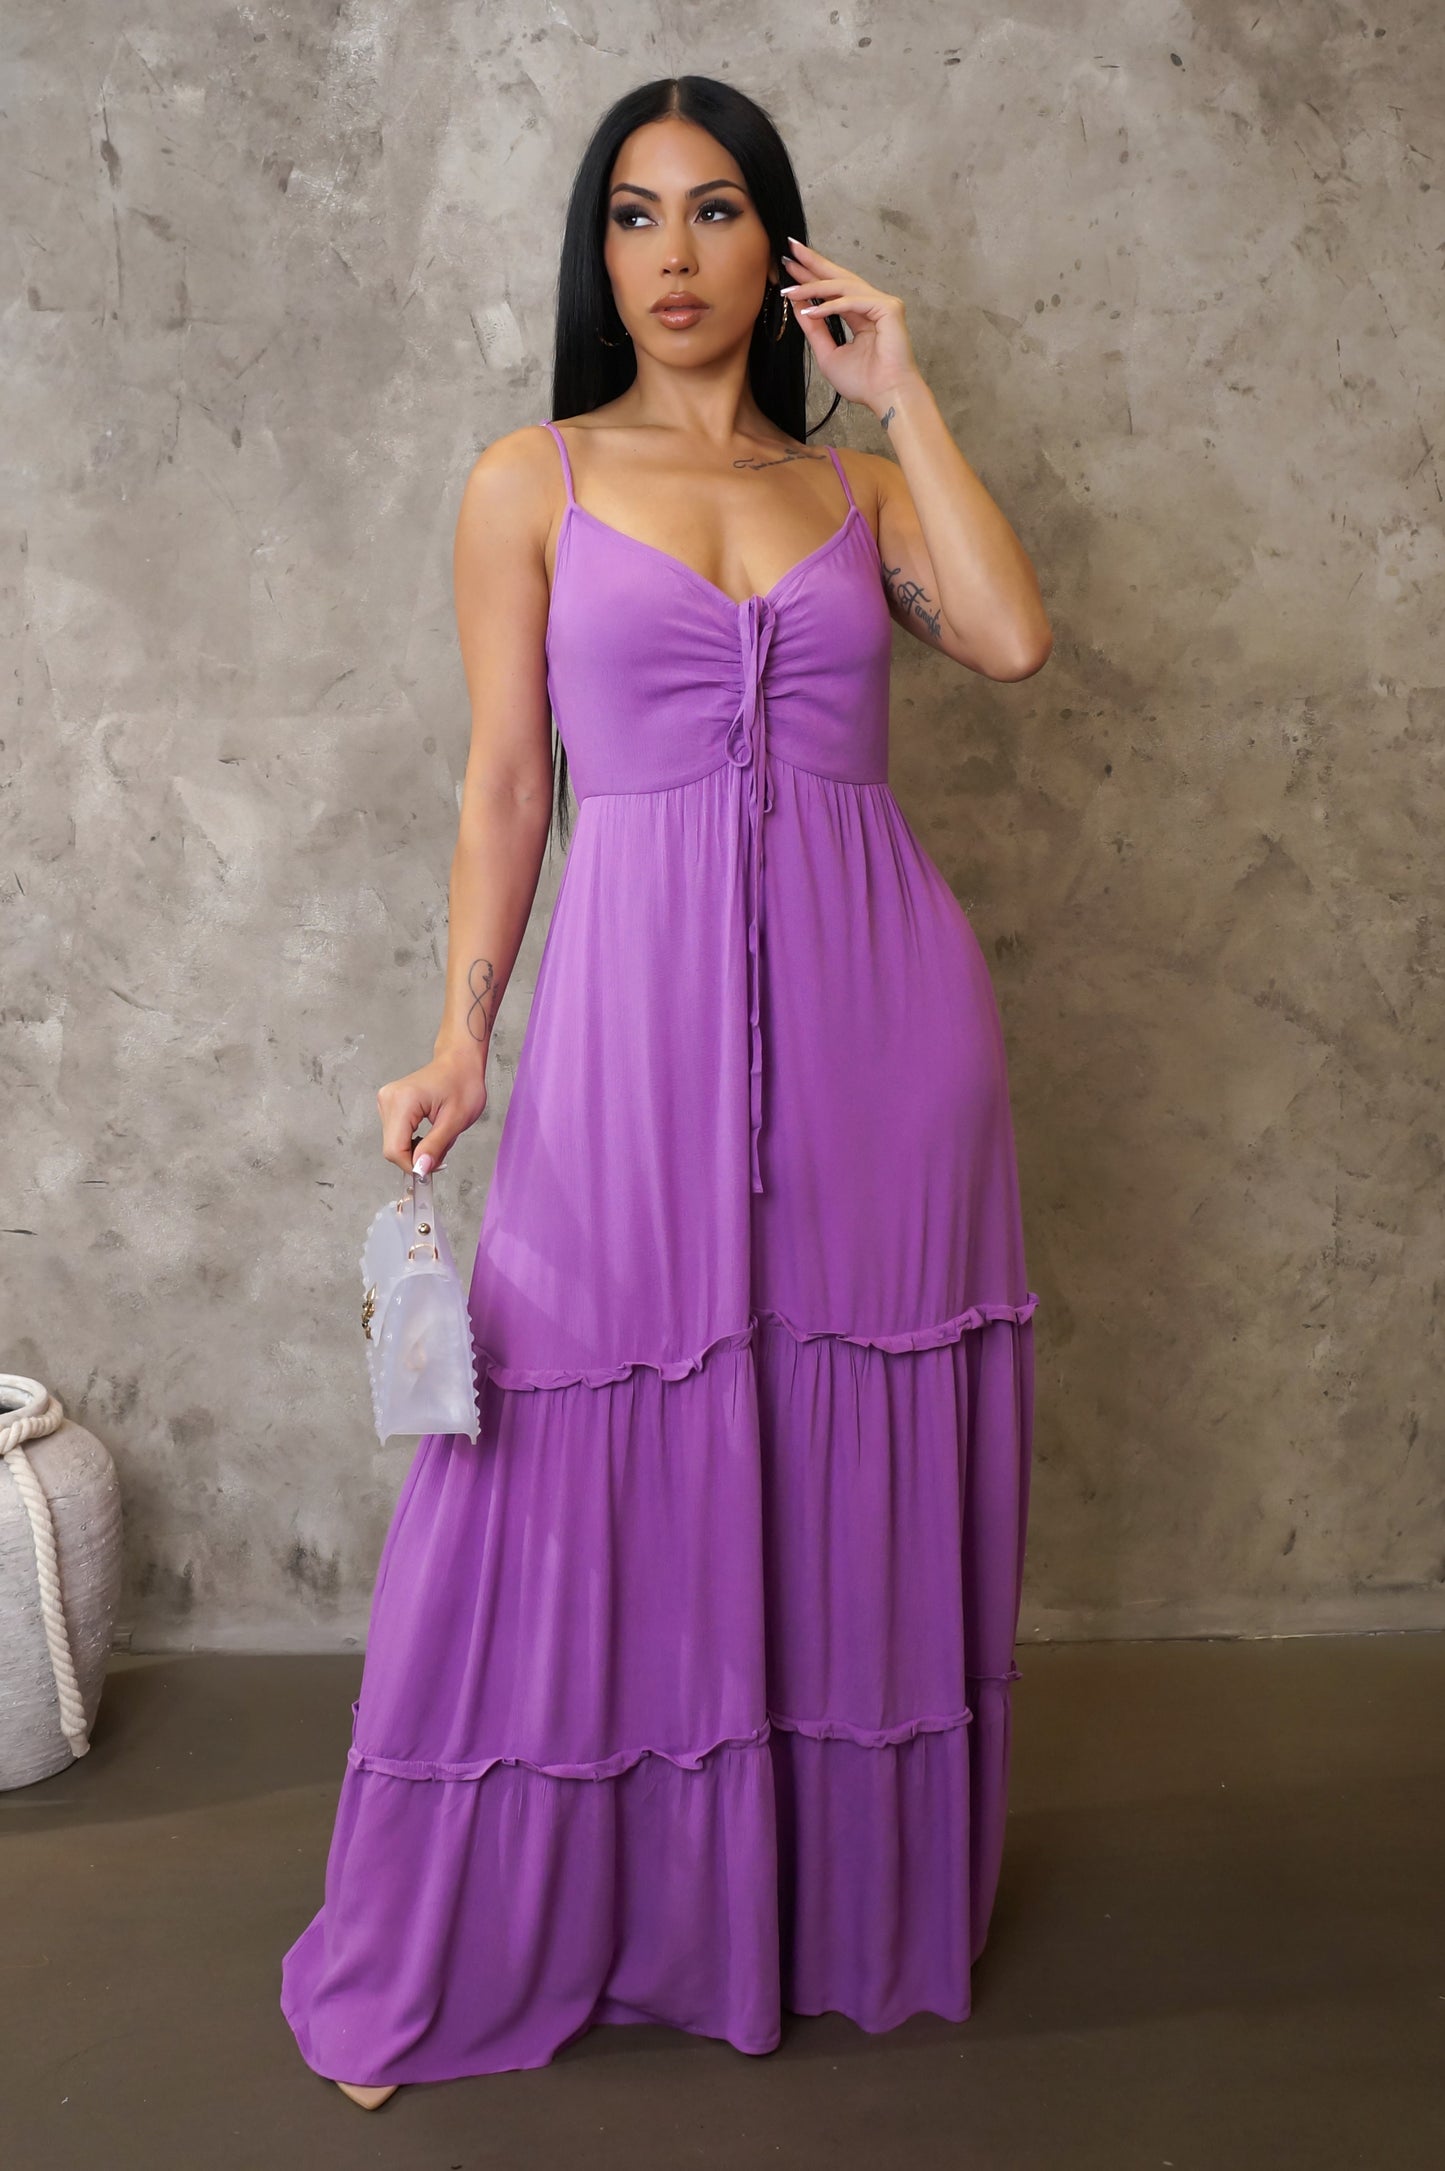 Cupid's Dress Maxi Dress - Purple